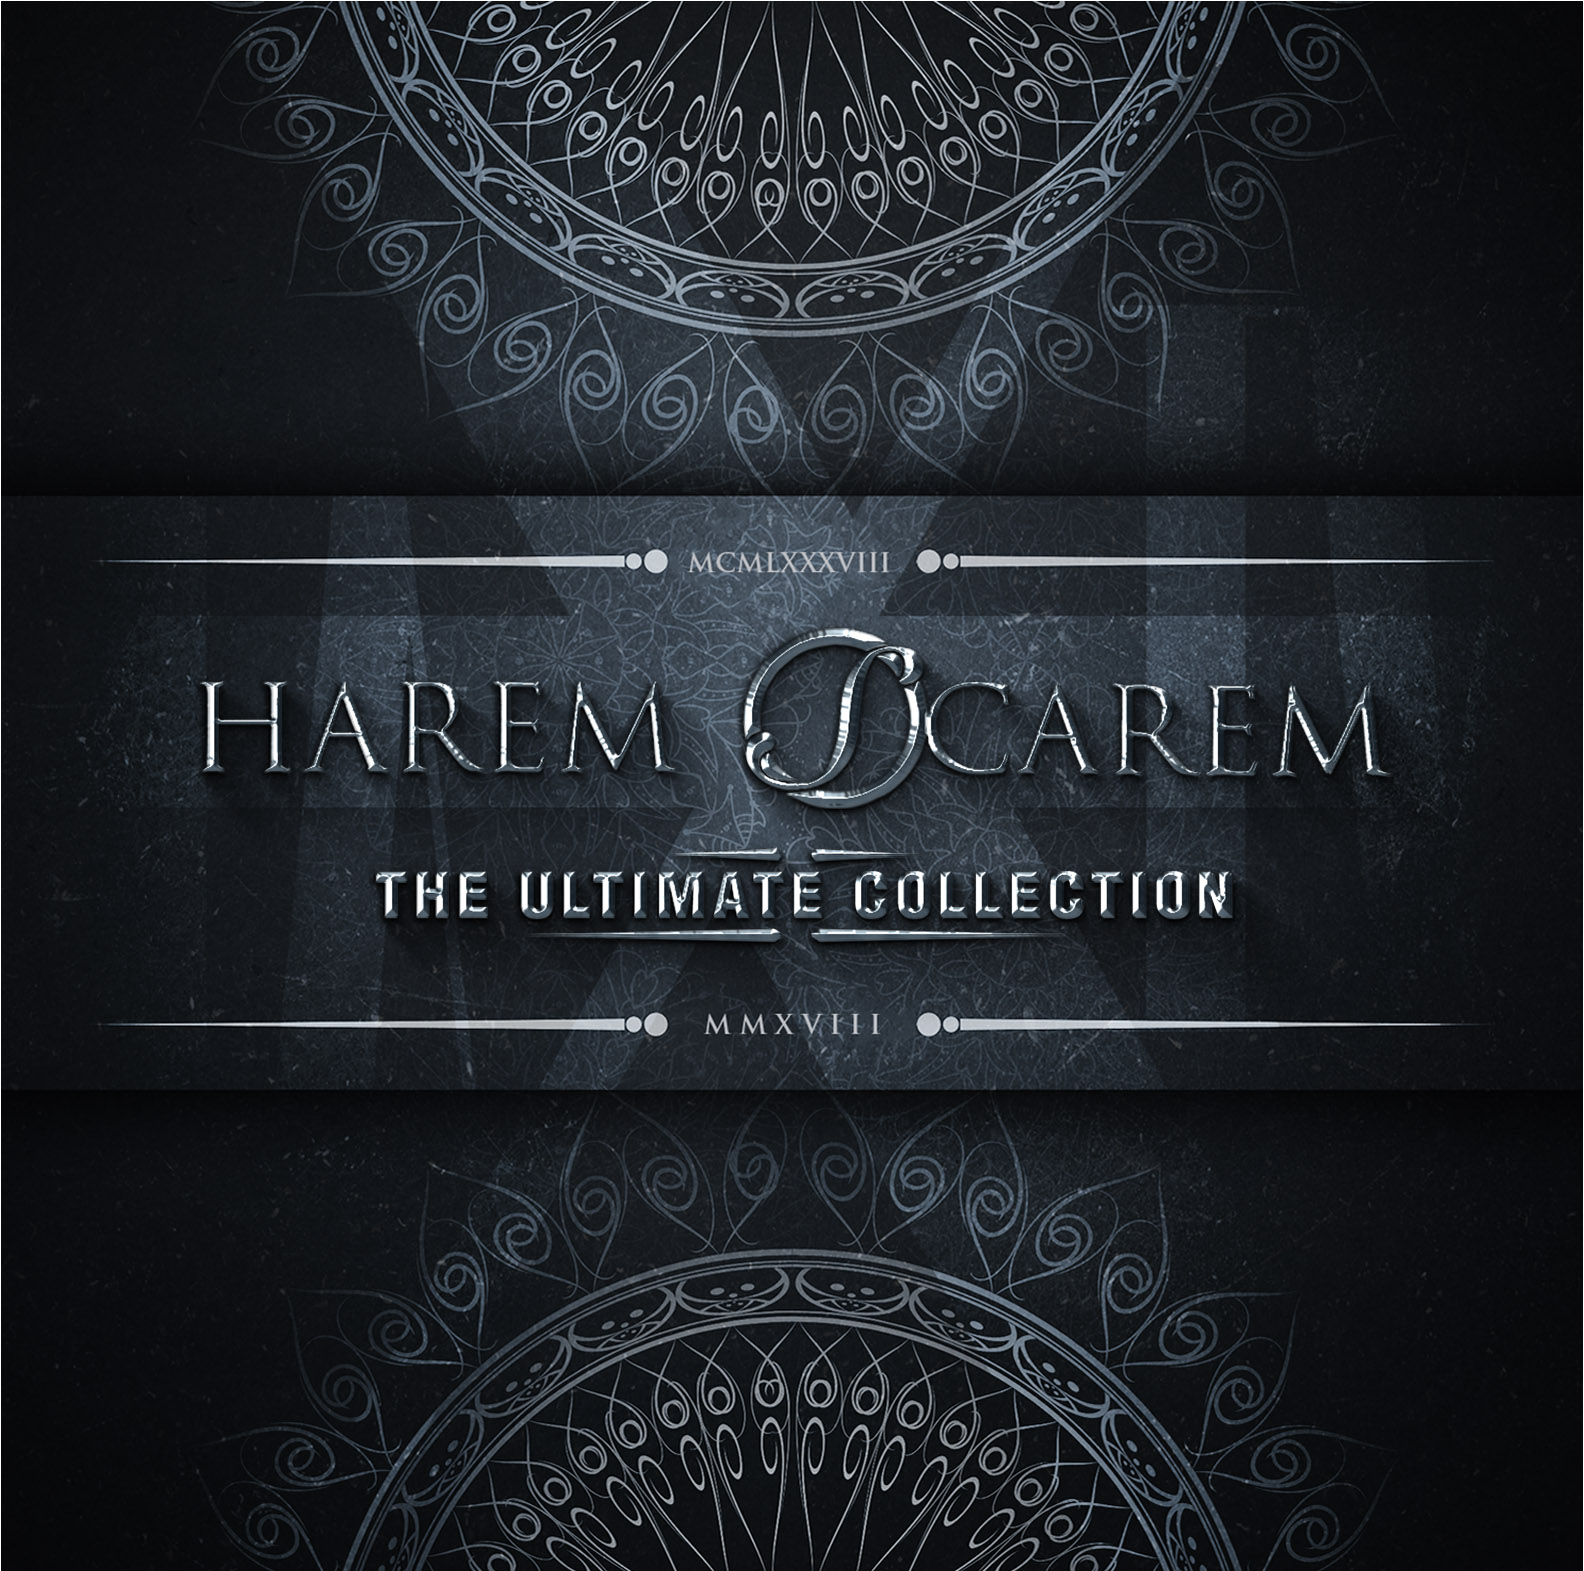 HAREM SCAREM - “Ultimate Collection Box Set”